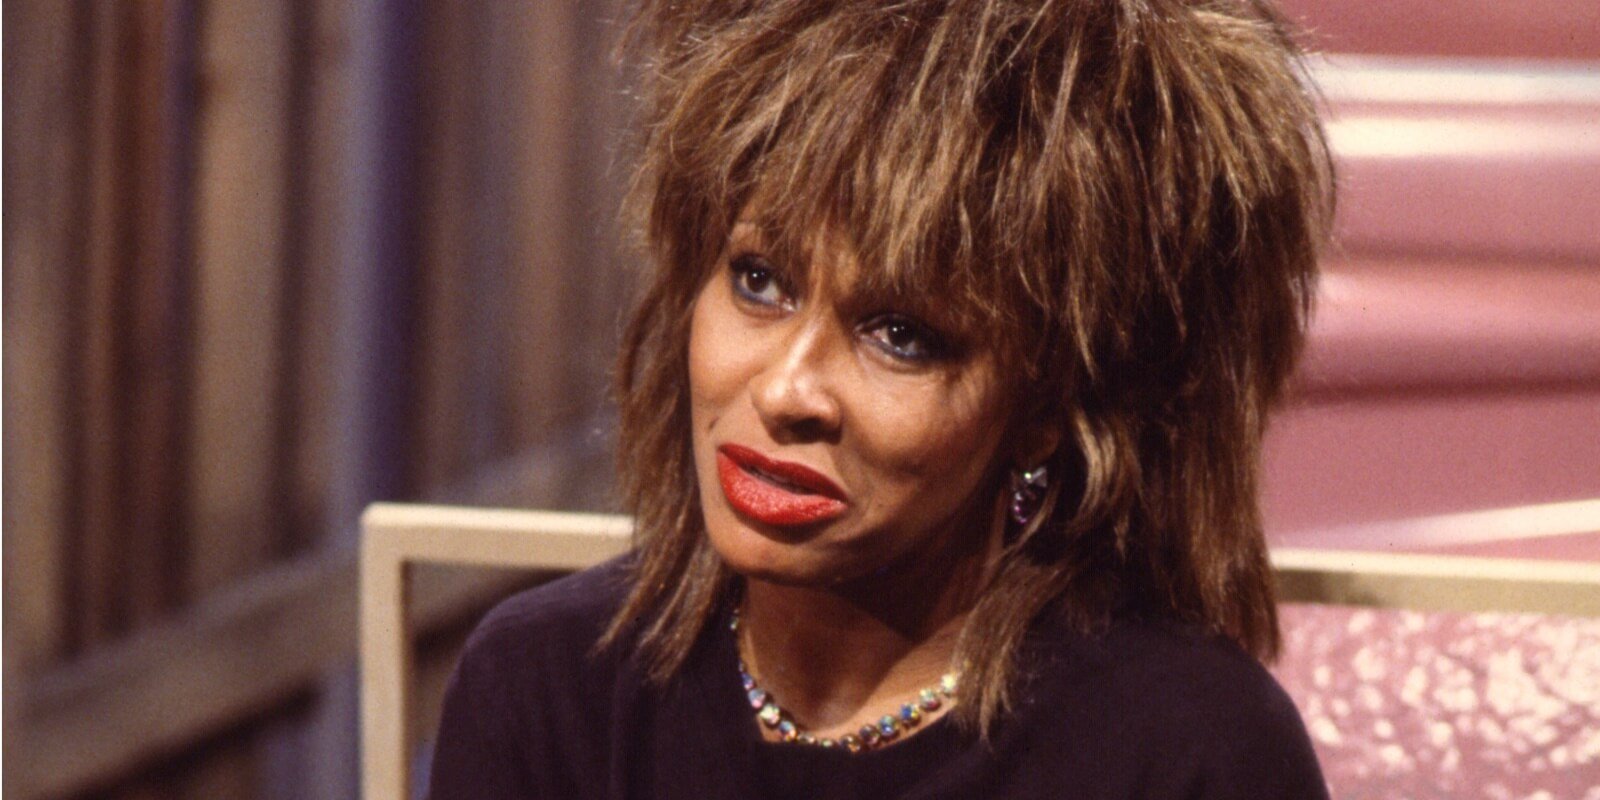 Tina Turner는 사망하기 두 달 전에 소셜 미디어 게시물에 '나는 심각한 위험에 처했습니다'라고 썼습니다.